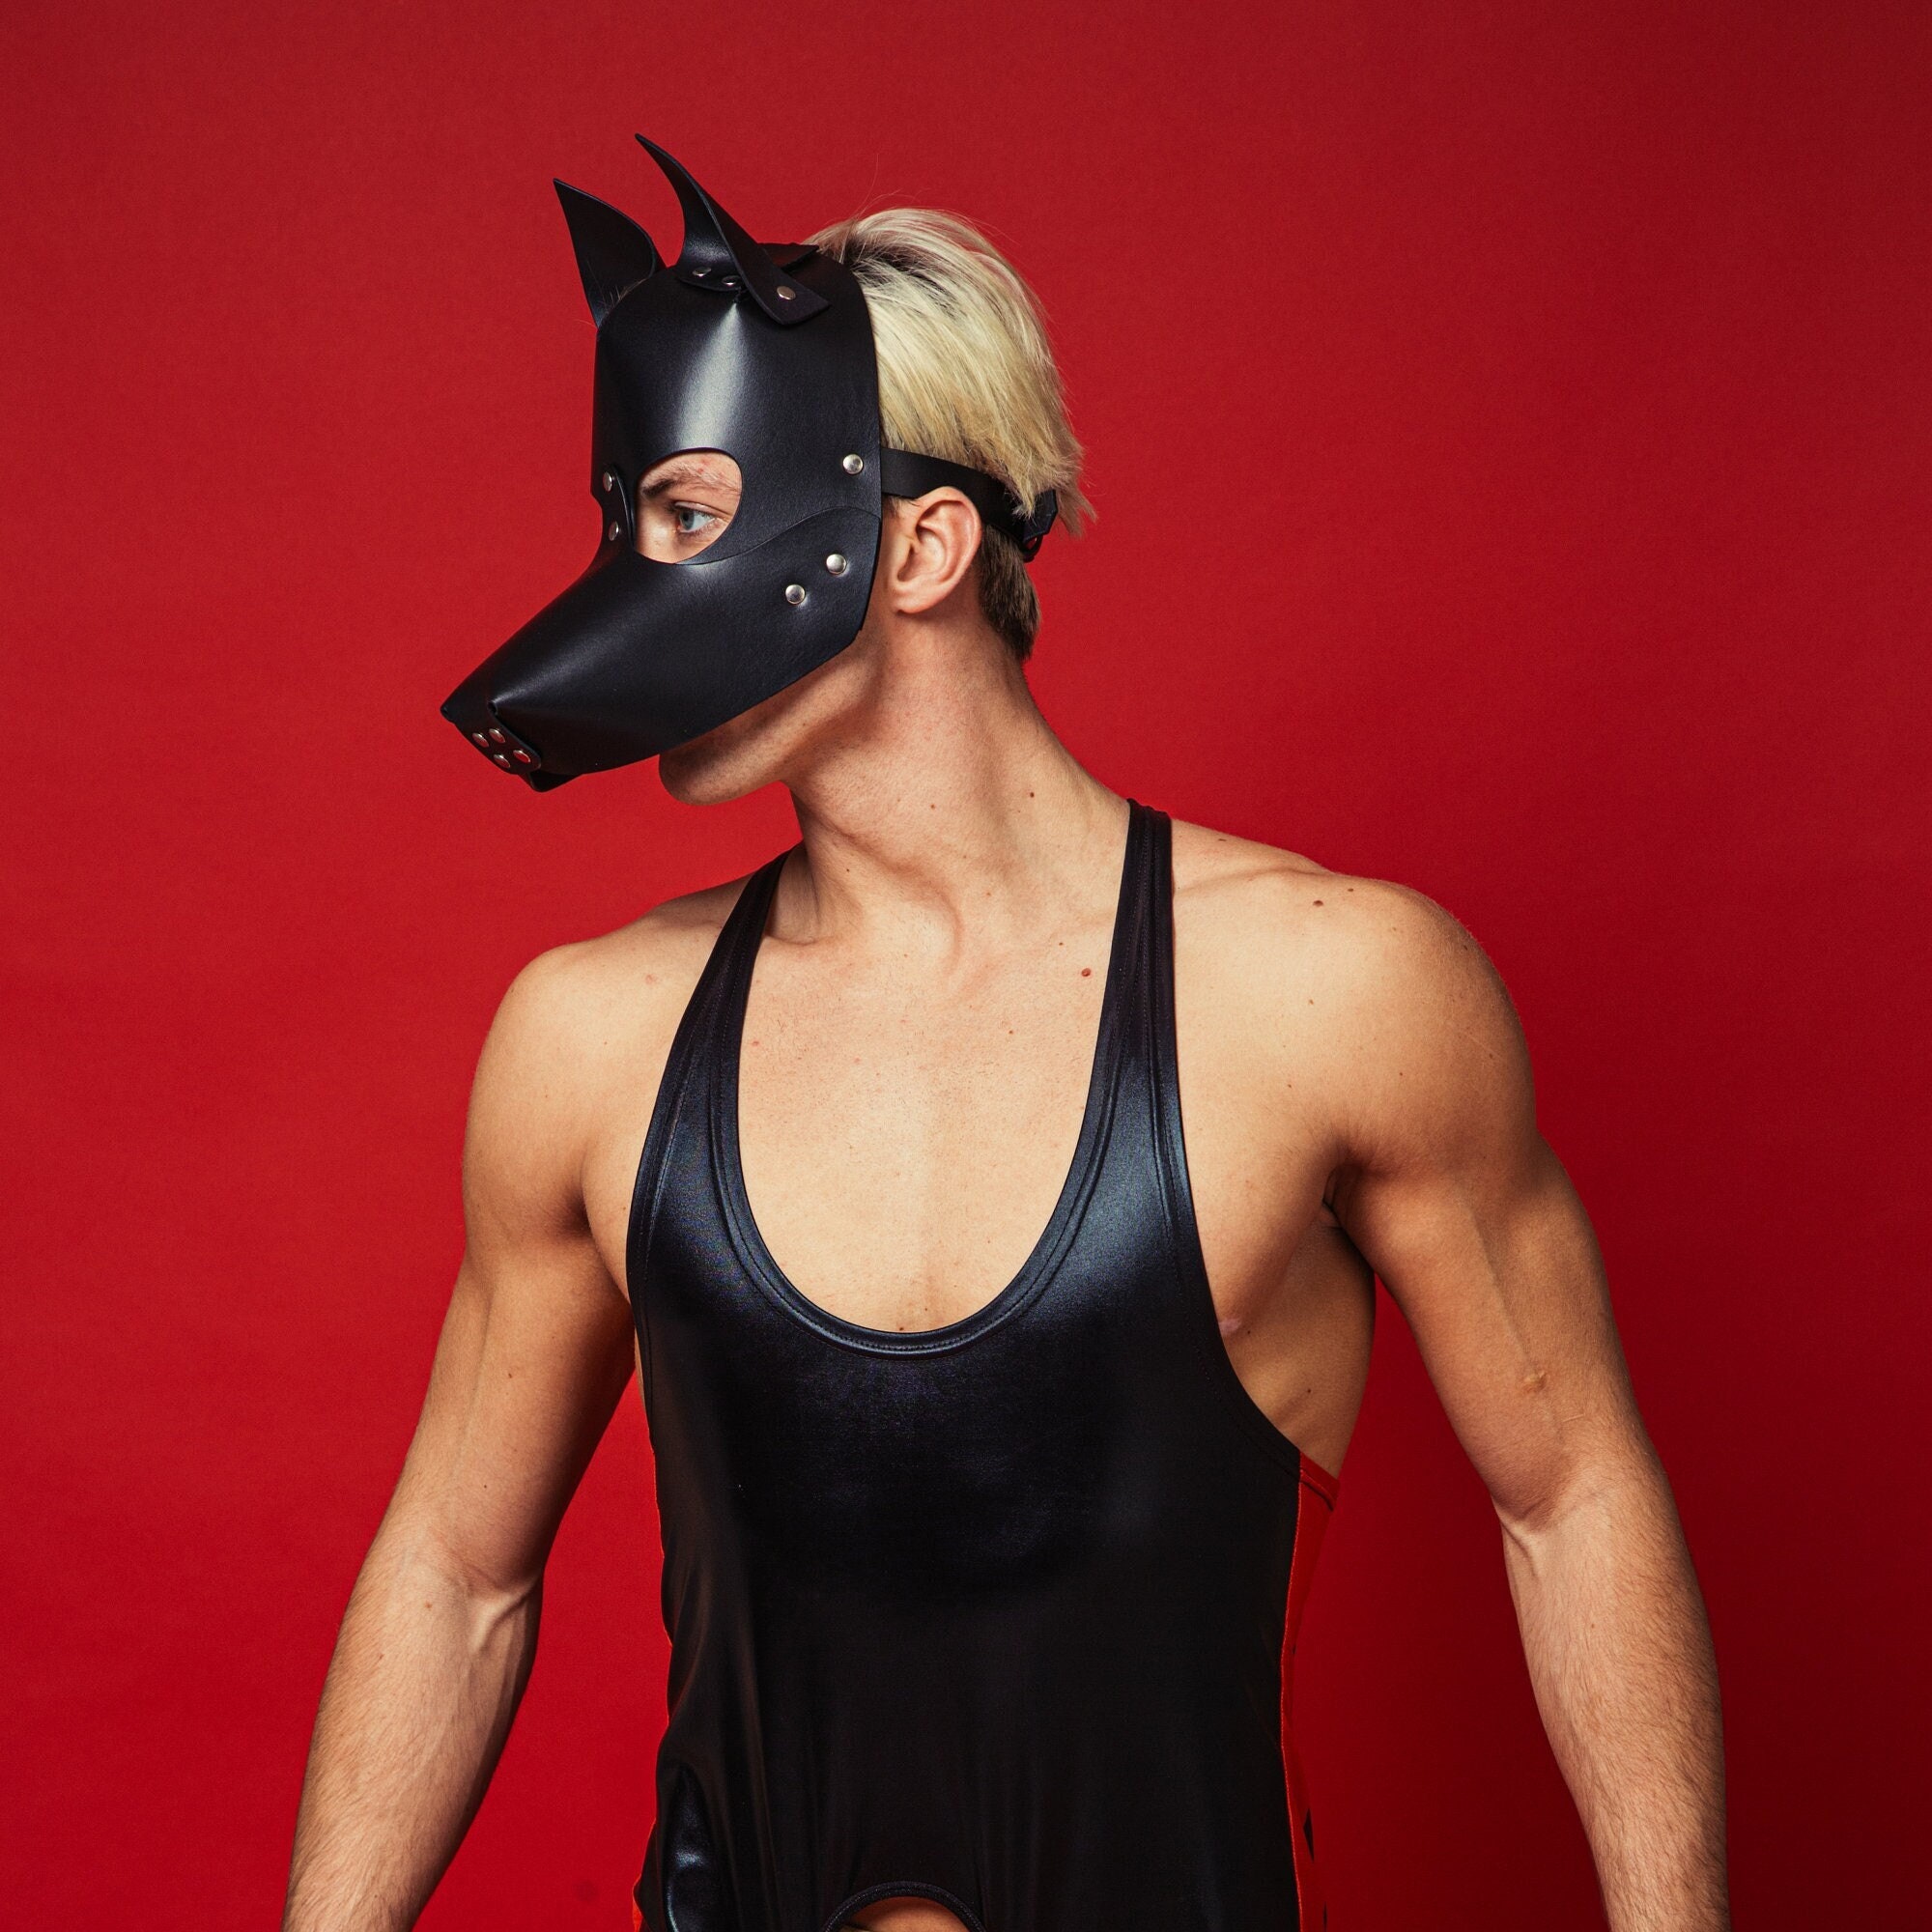 Leather Dog Mask Handmade High-Quality Animal Mask Unisex Leather Full Face Mask Dog Pet Play Leather Dog Mask Black Handmade Products photo